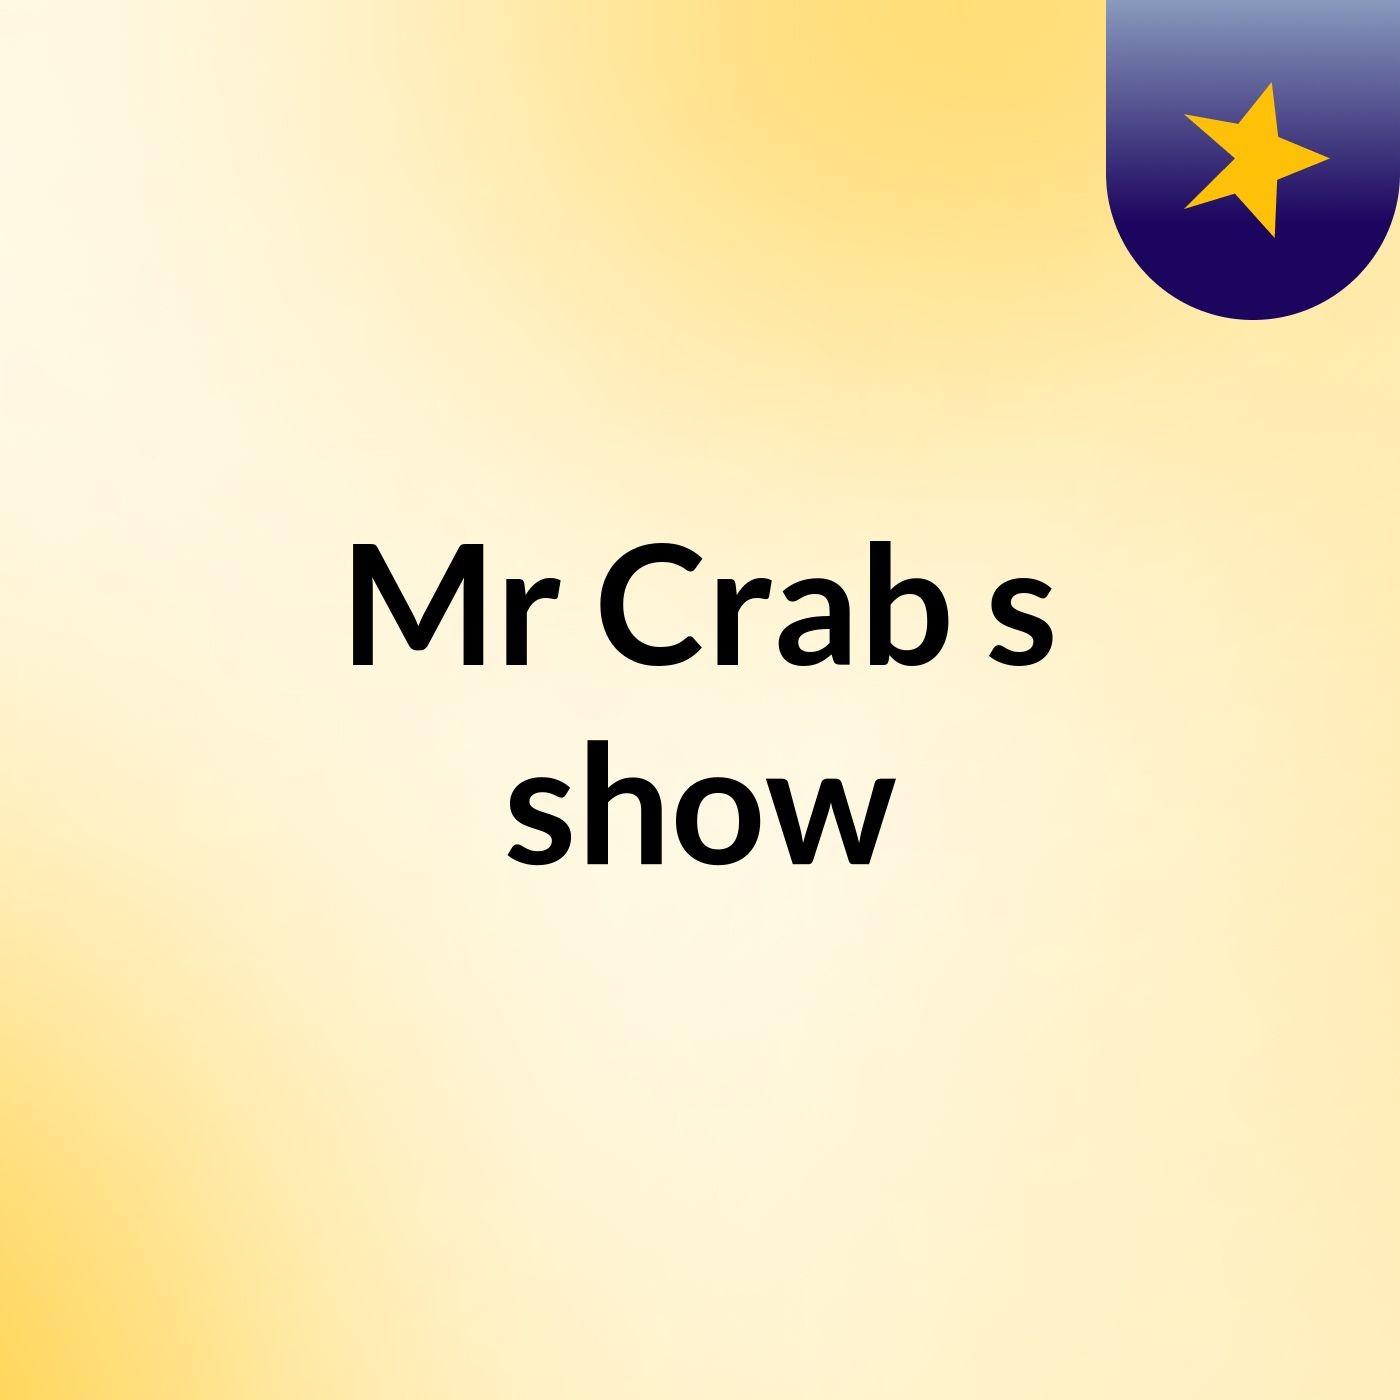 Mr Crab's show